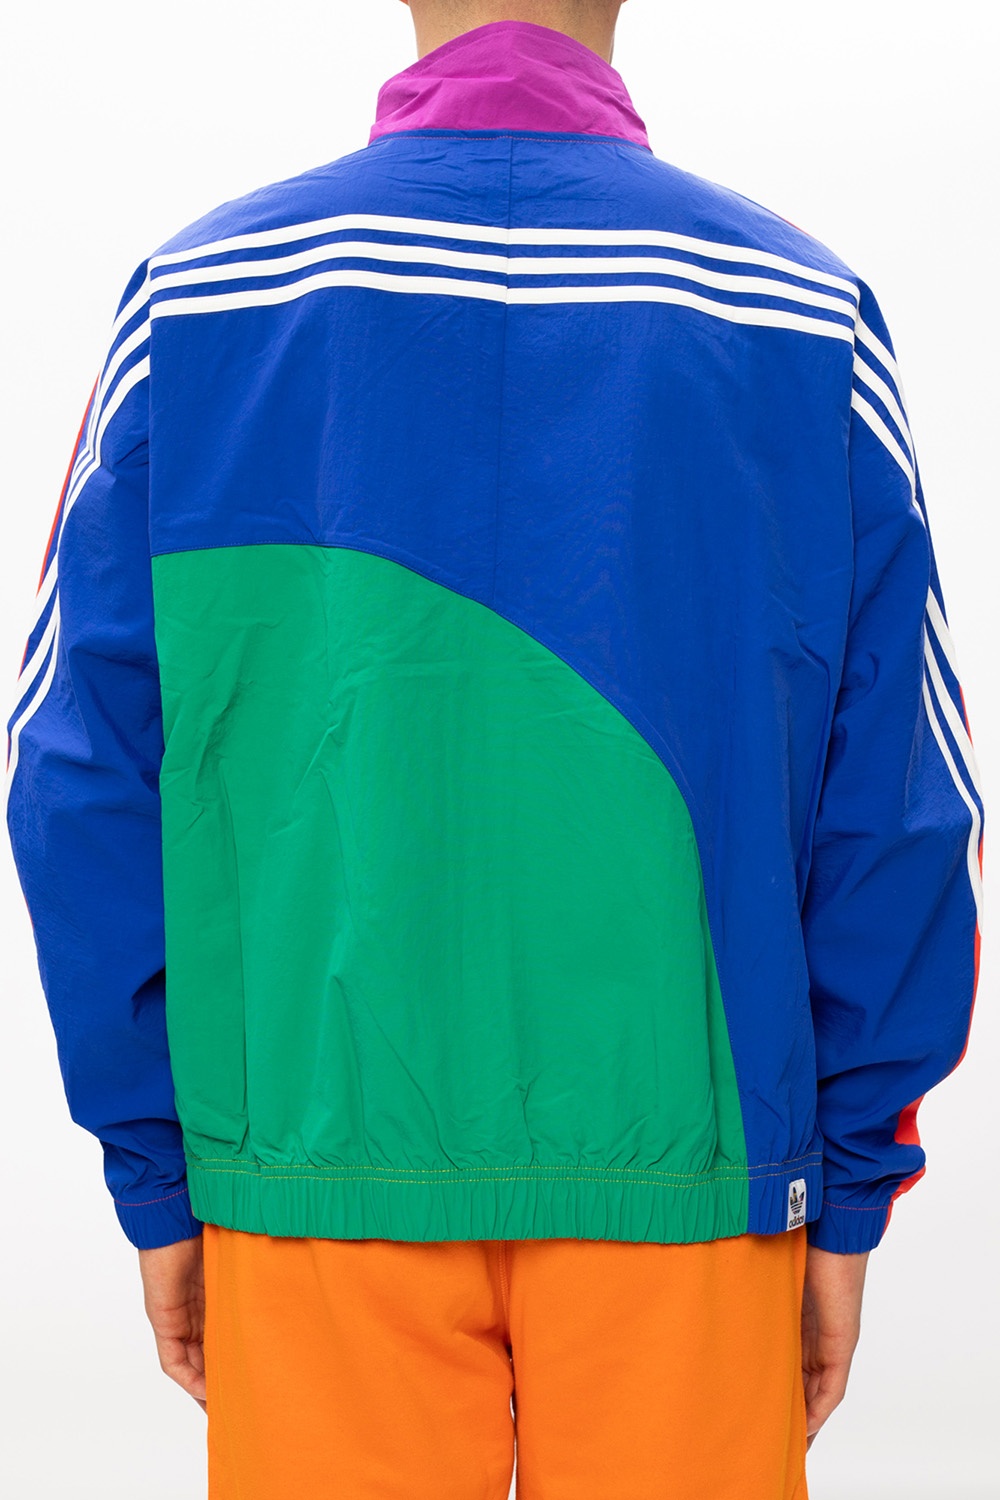 blue orange and white adidas jacket